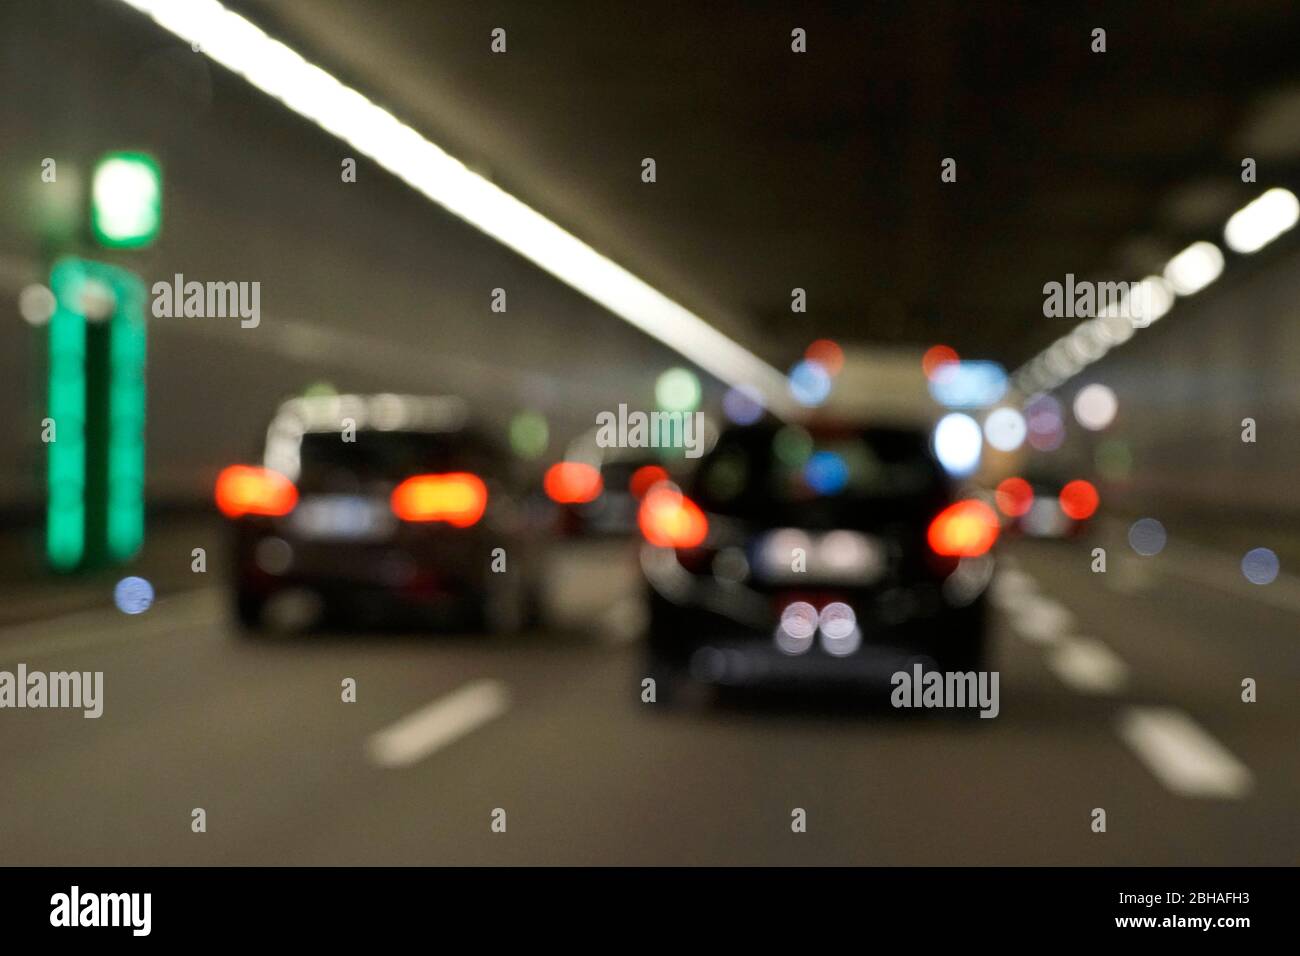 Deutschland, Bayern, München, Richard-Strauß-Straßentunnel, Verkehr, Autos, unscharf, verschwommen Stock Photo